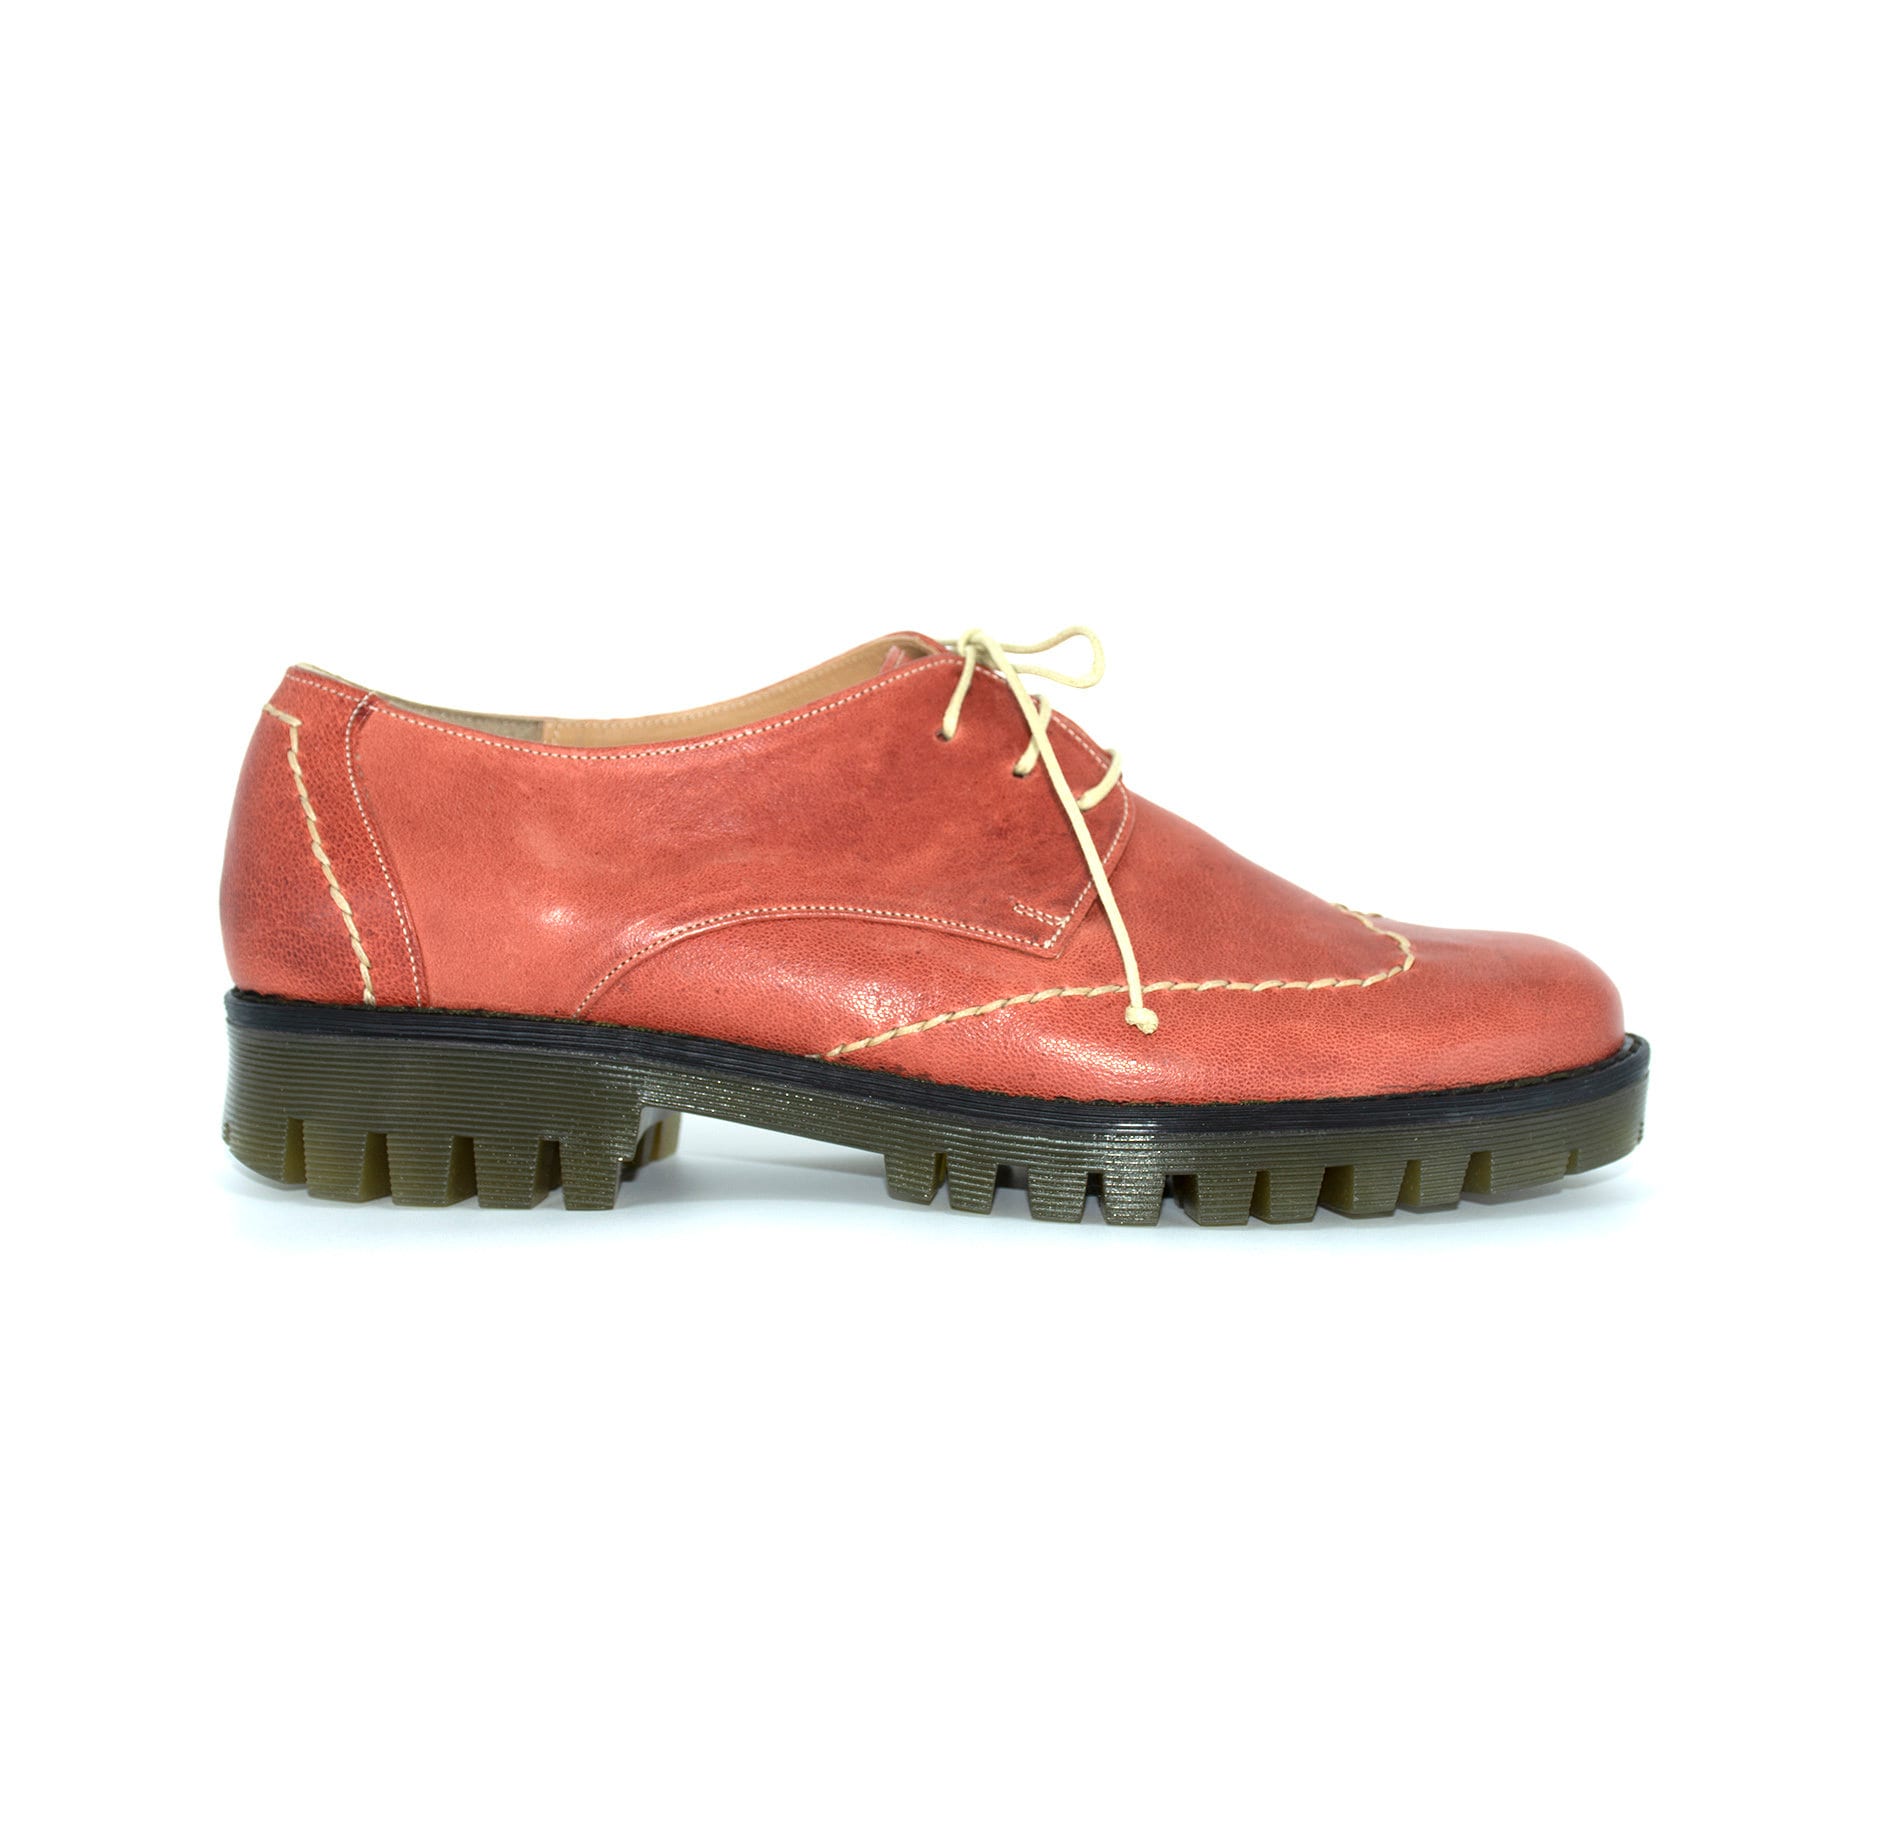 Damen Oxford Schuhe, Frauen Sattel Schuhe, Rote Leder Schuhe, Platform Oxfords, Schuhe Zum Schnüren, Handgefertigte Schuhe, Schuhe Nach Maß von KalicosisShoes